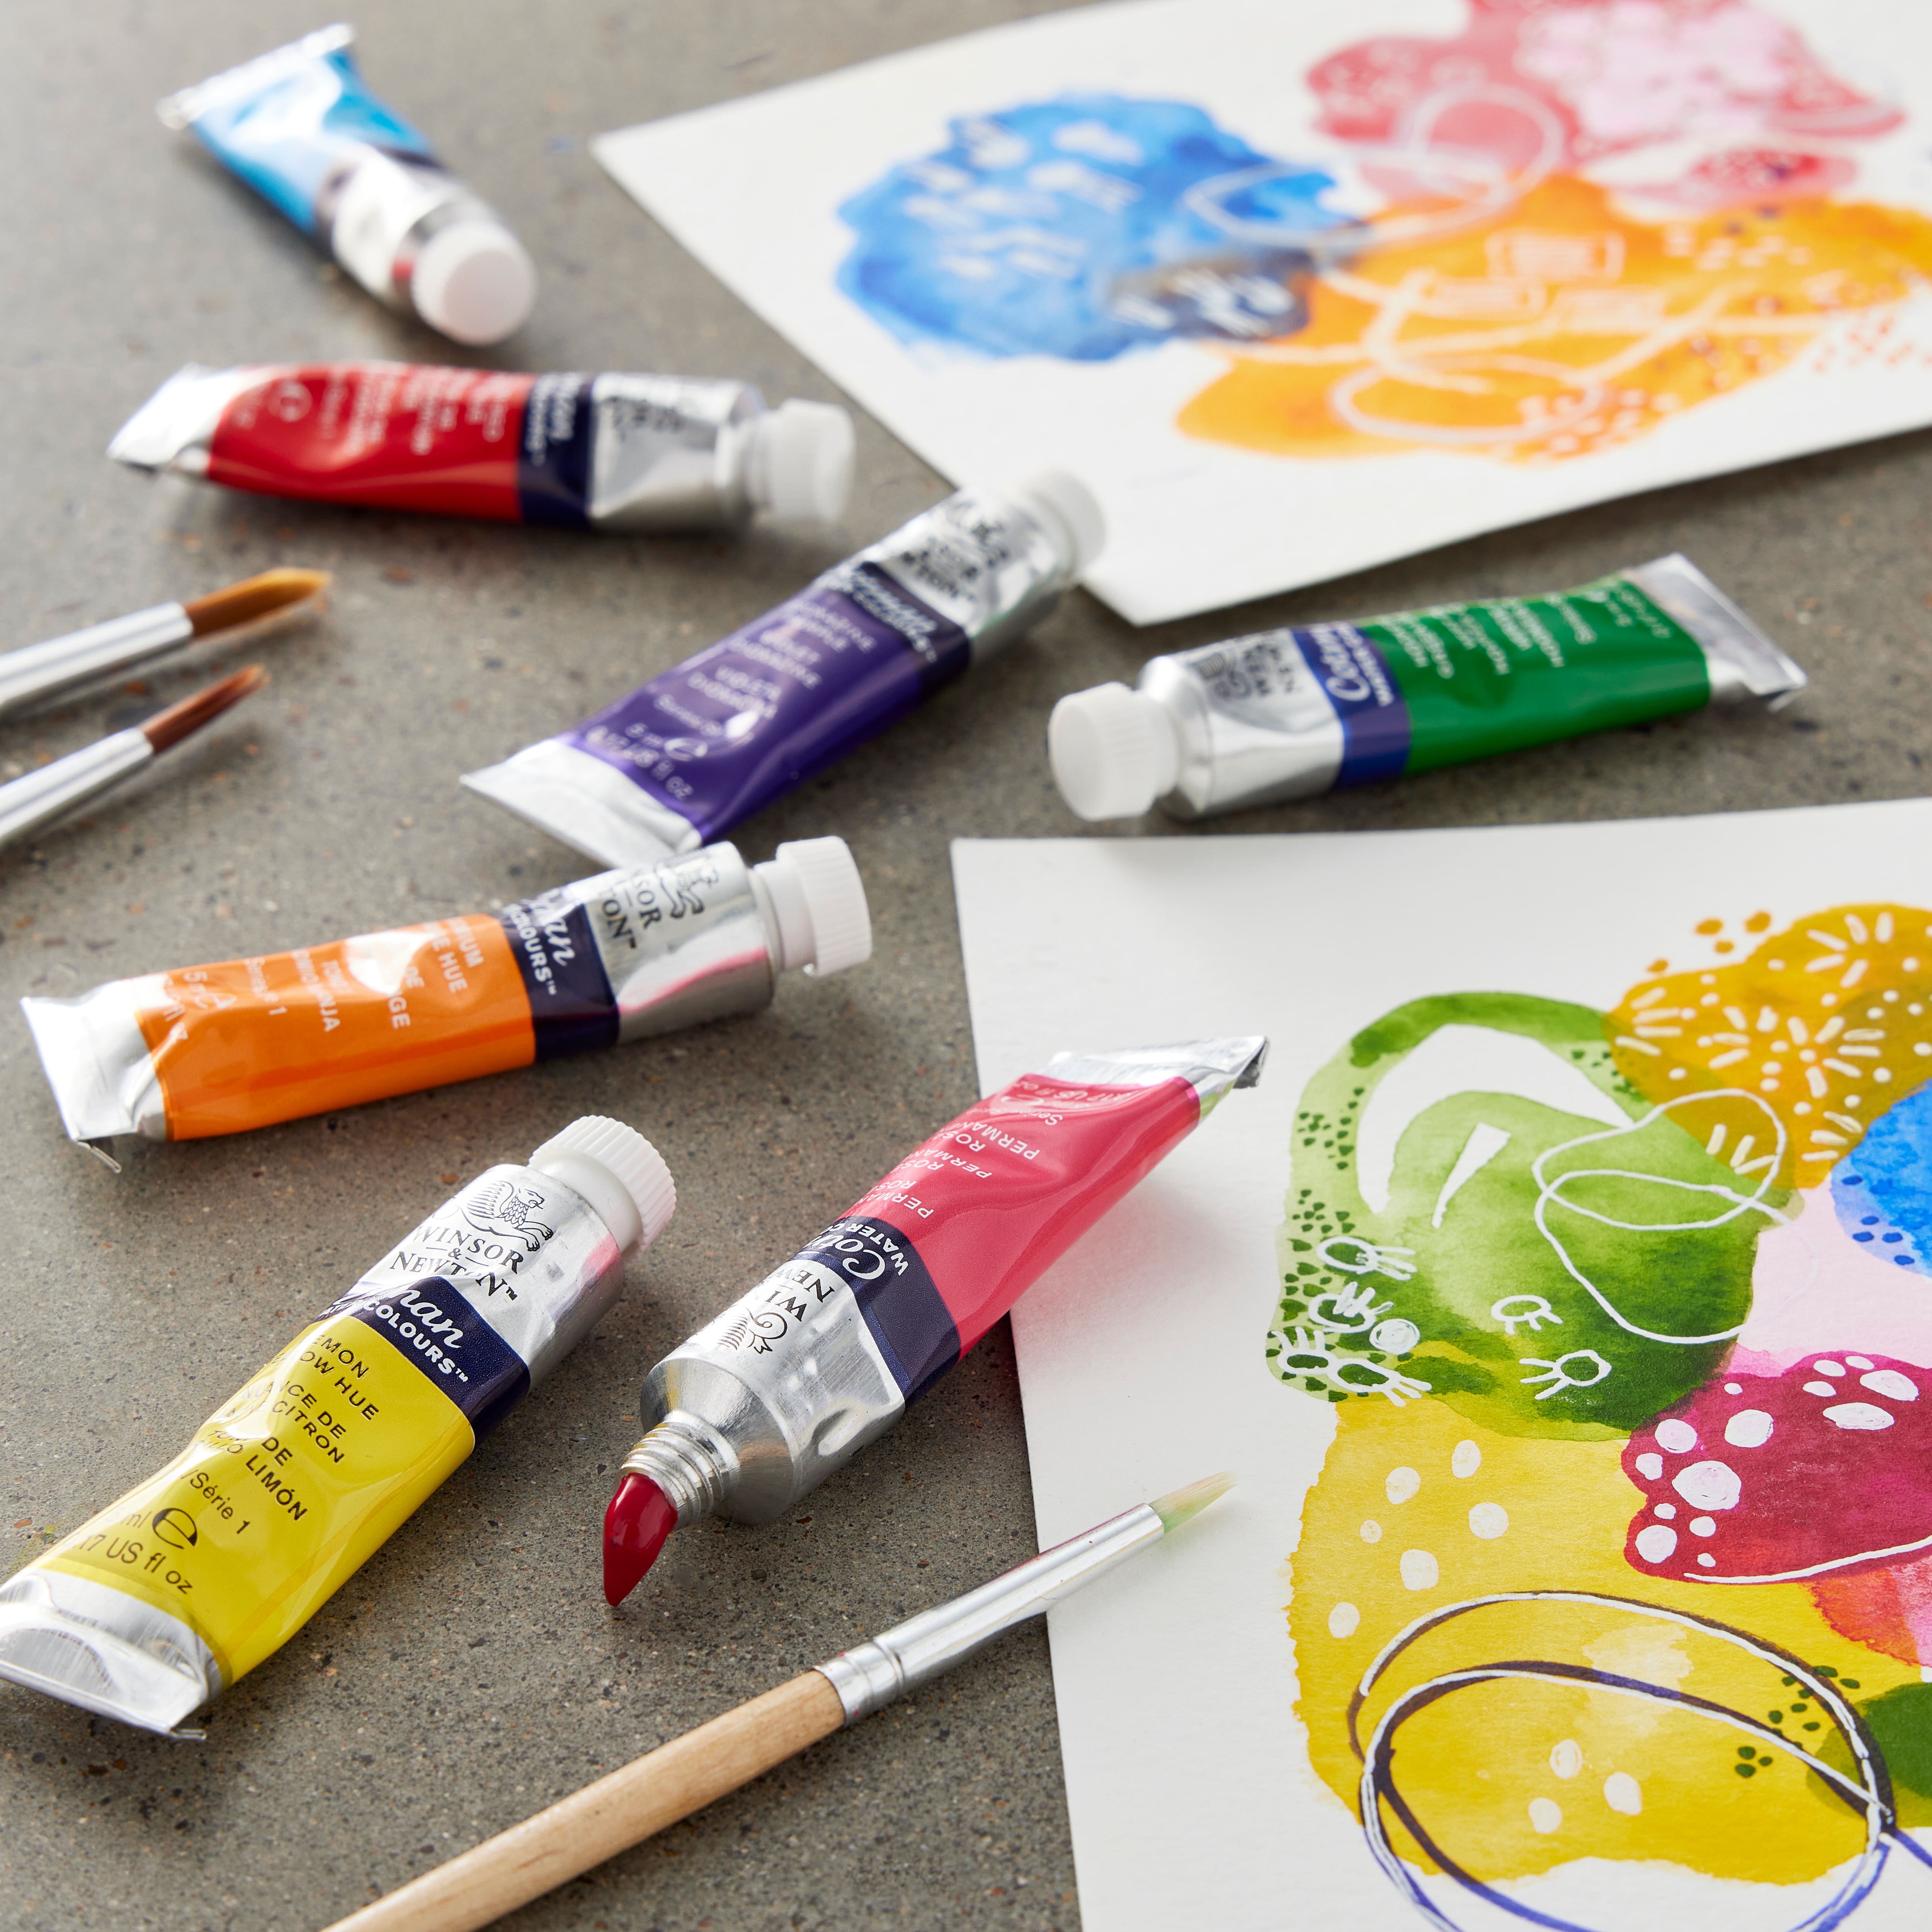 Winsor & Newton™ Cotman Water Colours™ 20 Color Paint Set